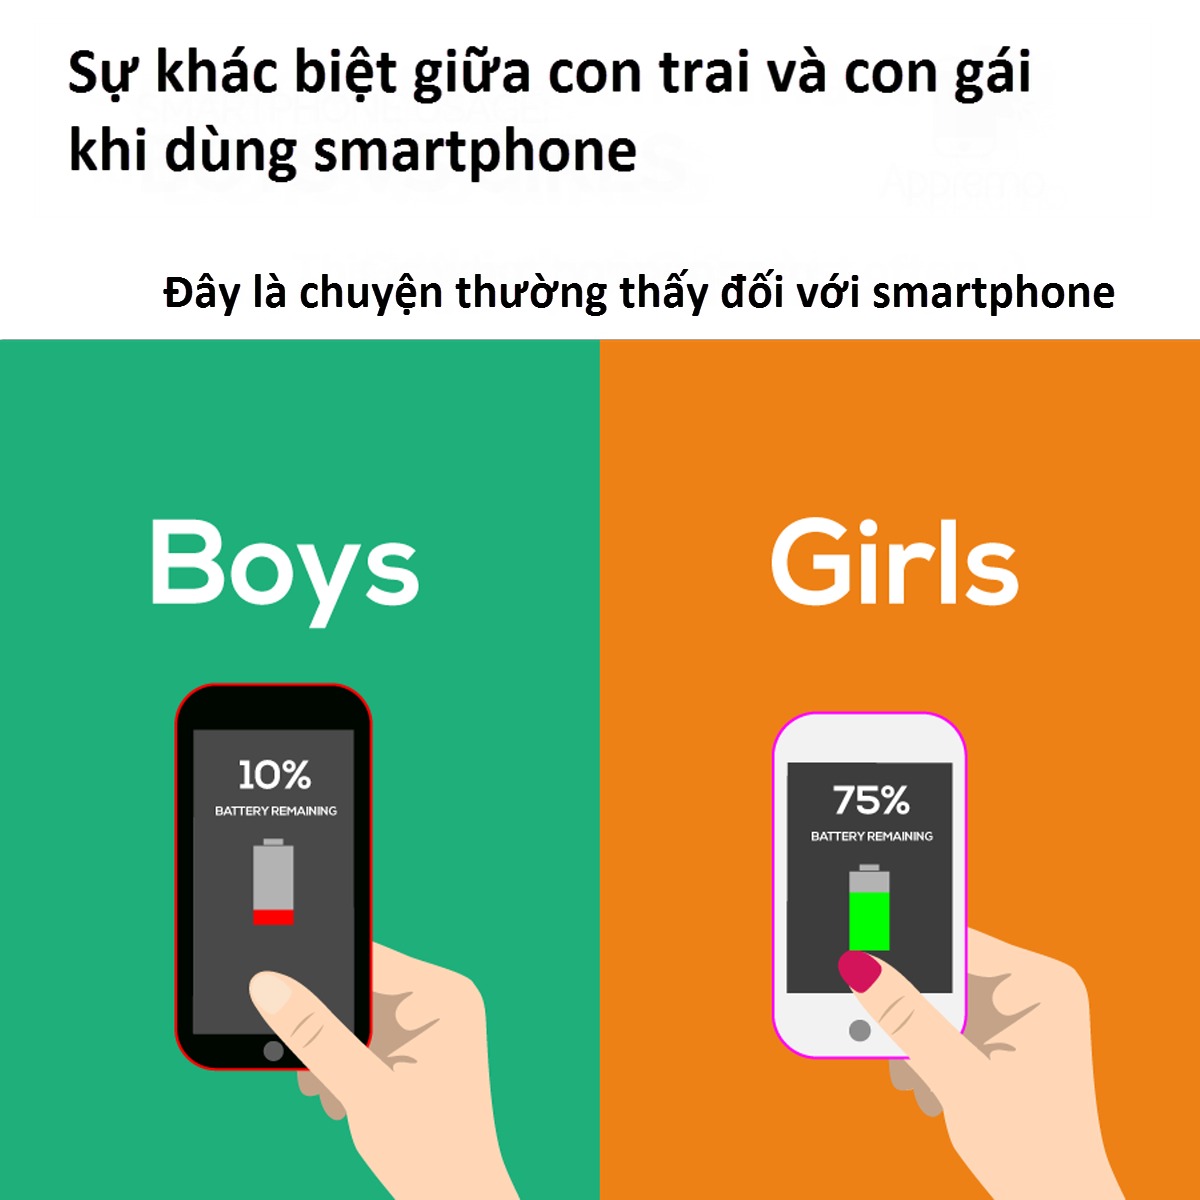 Nam vs Nữ - Khác biệt trong thói quen dúng smartphone